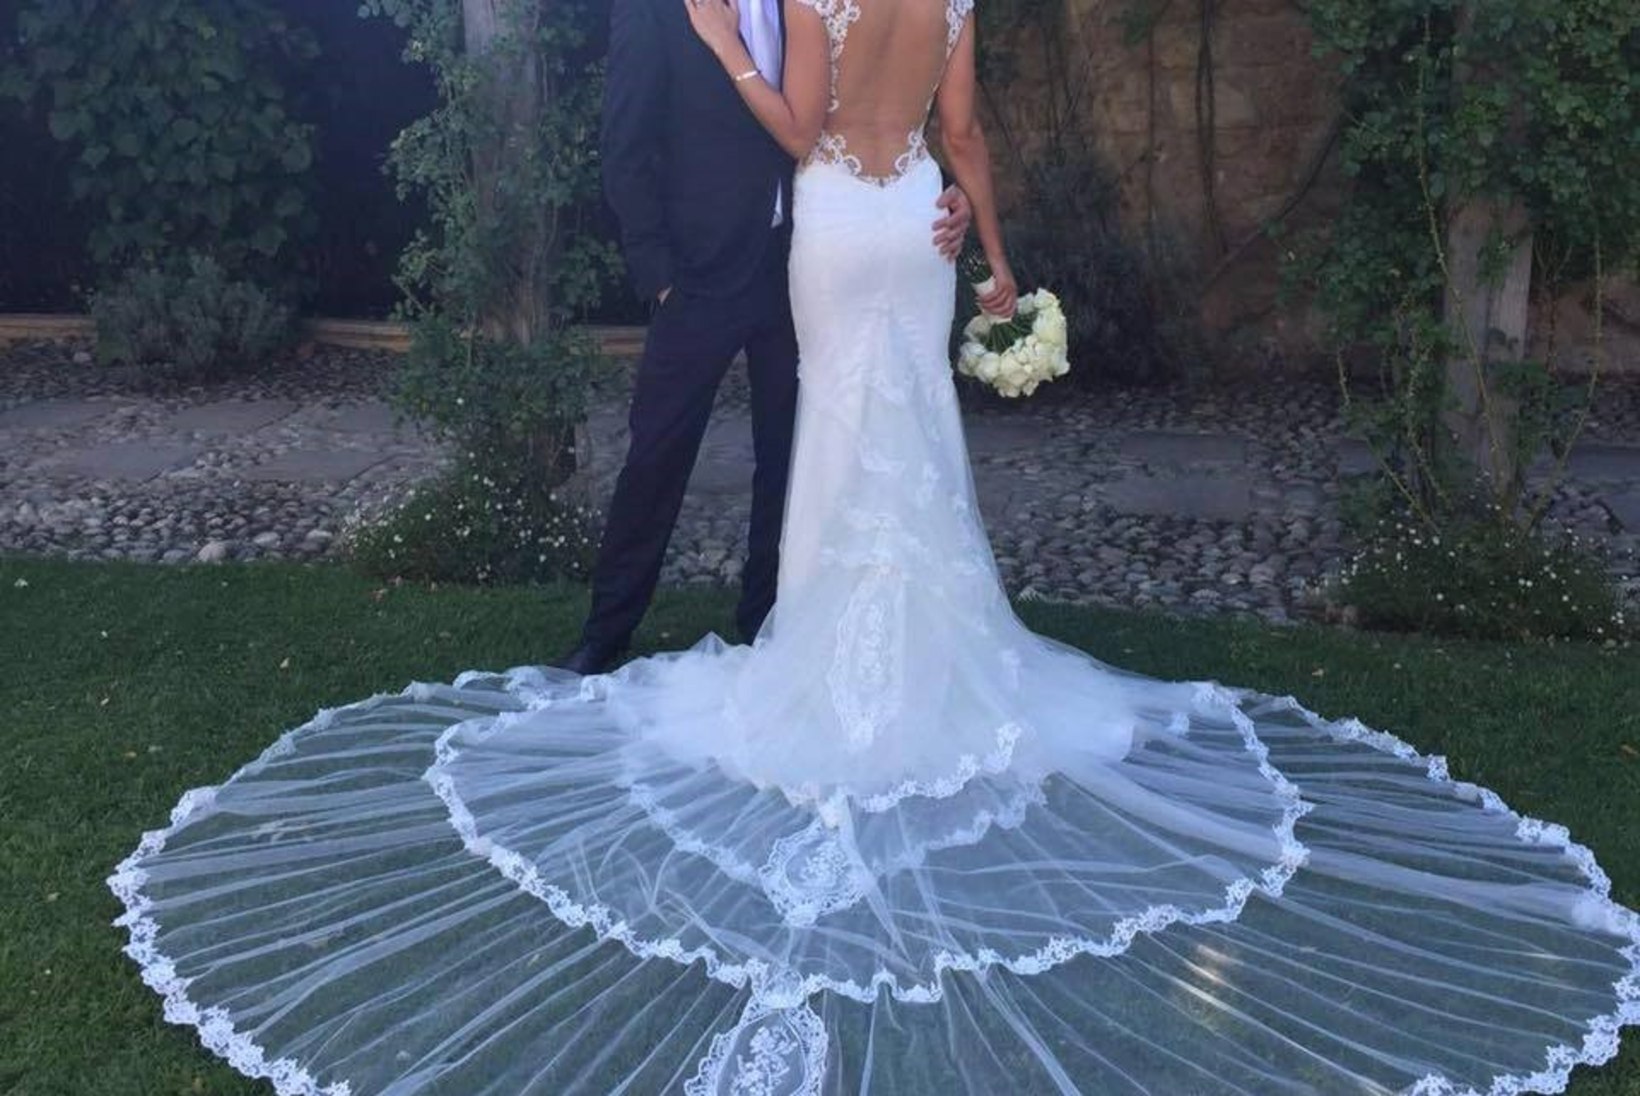 Vaata Kimi Räikköneni abikaasa vapustavalt ilusat pulmakleiti!